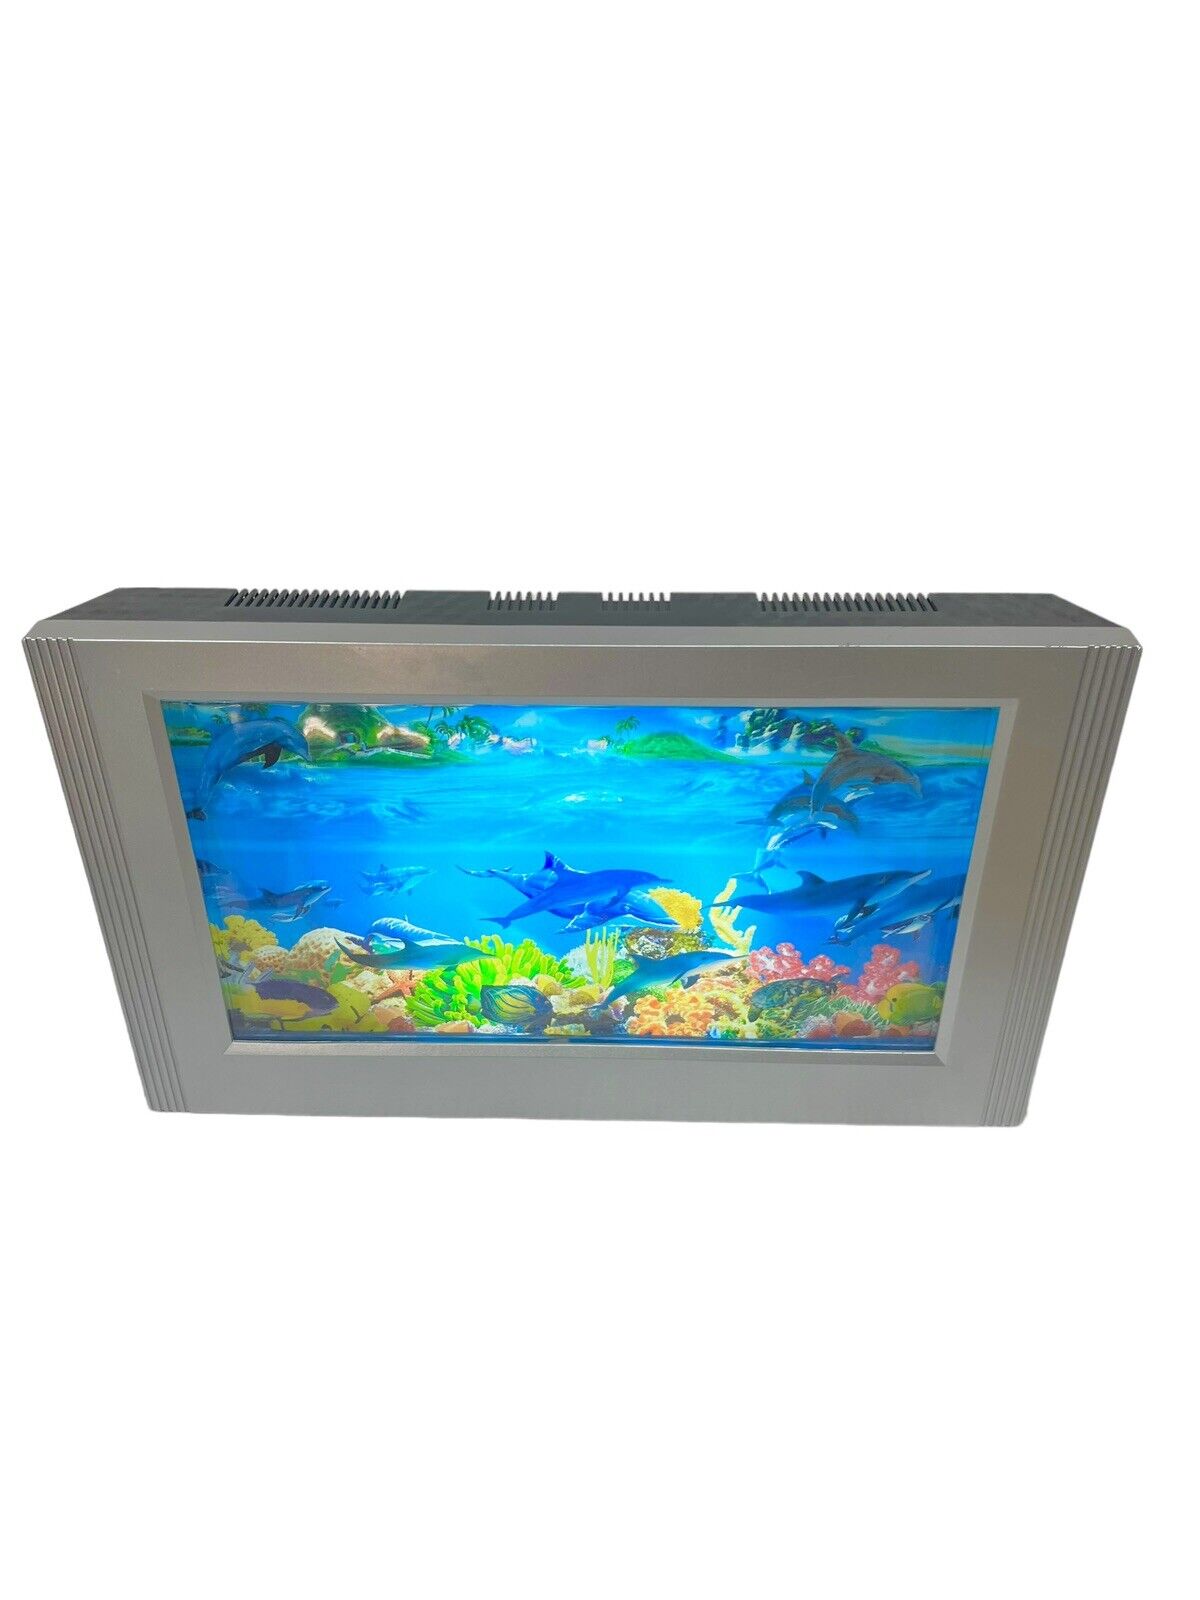 Retro Motion Aquarium Light Ocean Fish Rotating Scene Lamp Night Light